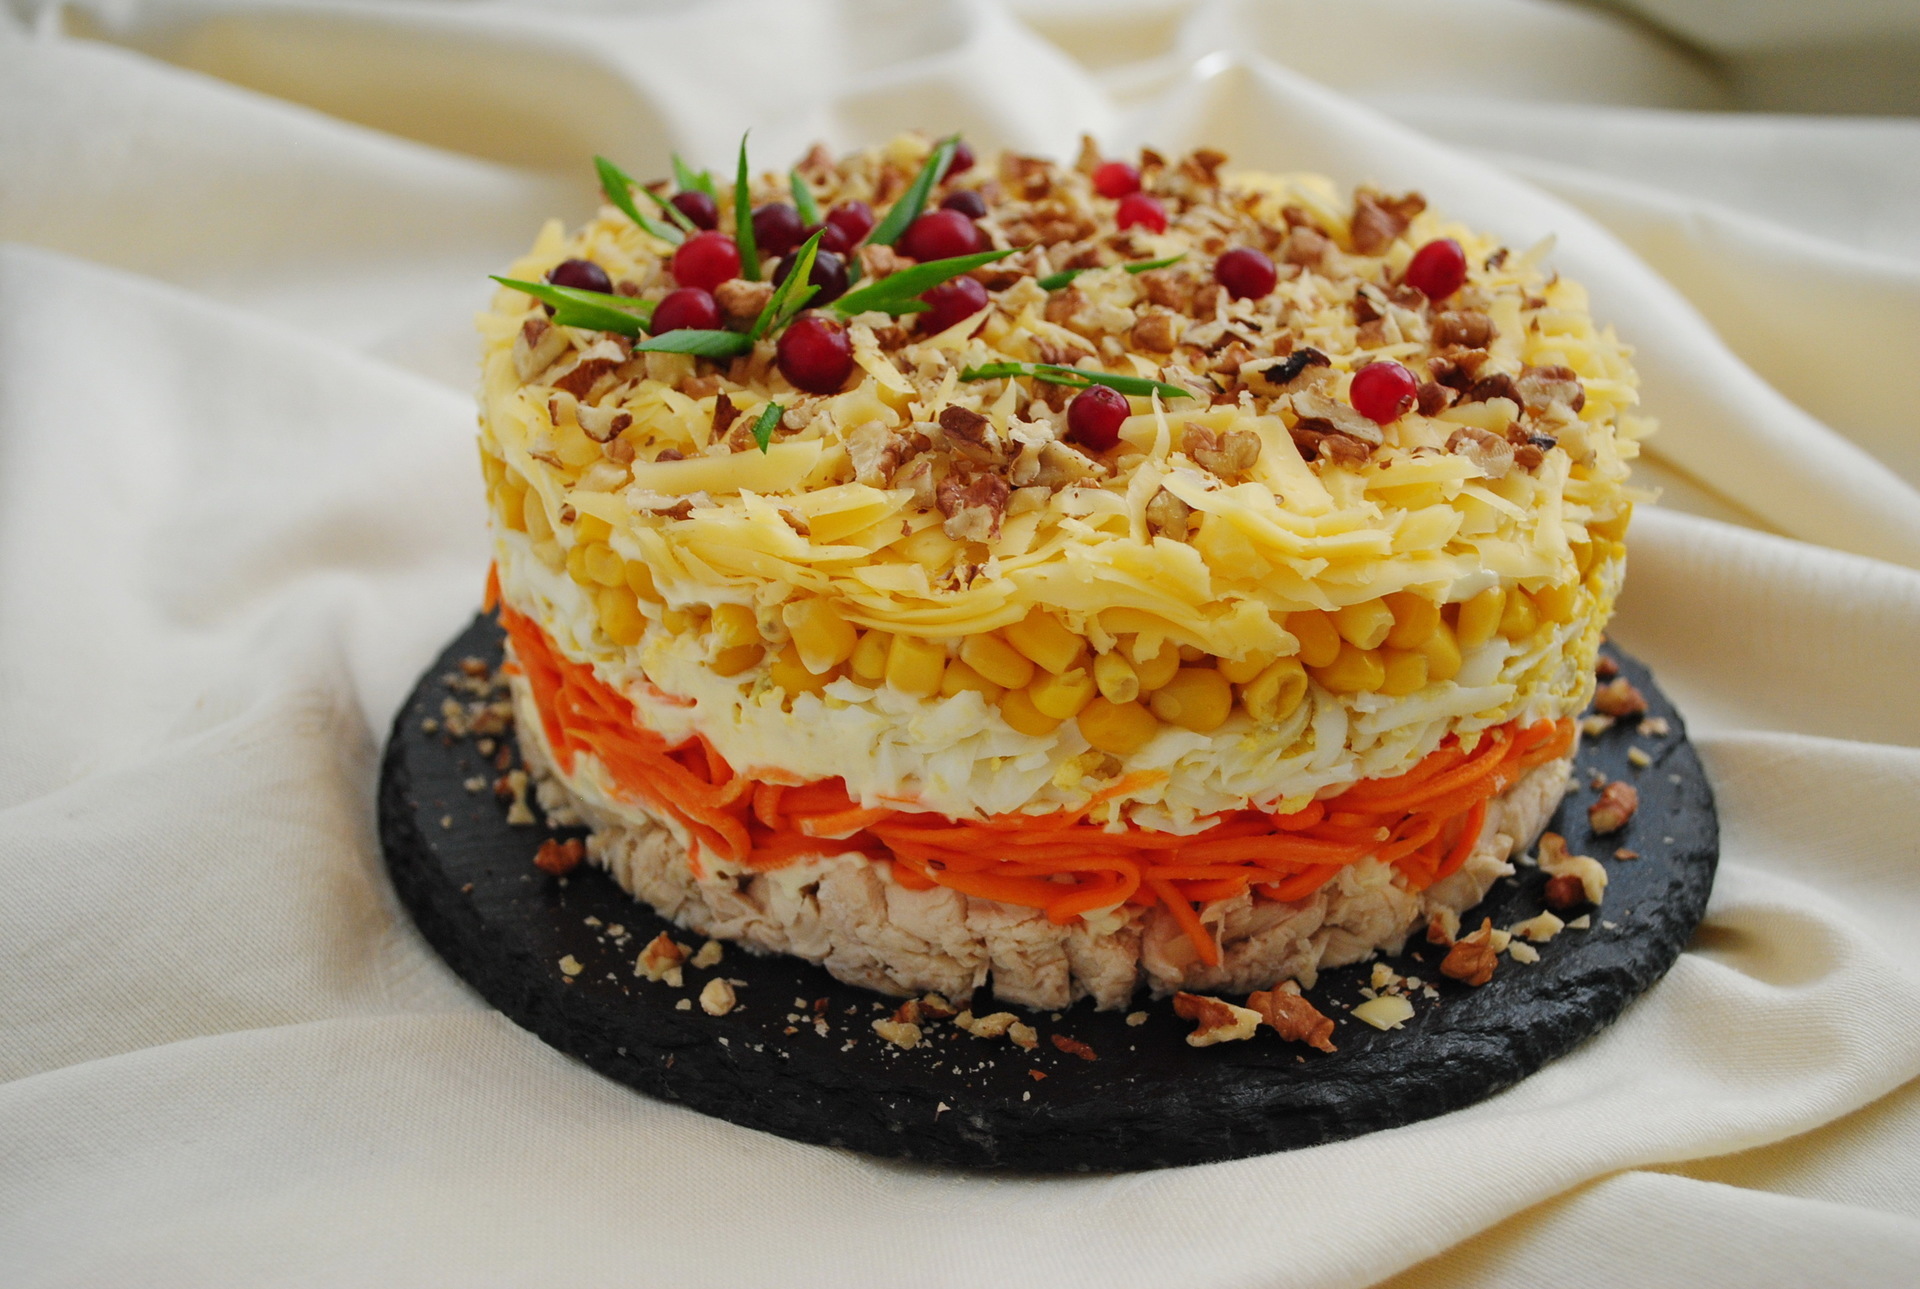 Фото к рецепту: Праздничный салат "фантазия" на новогодний стол